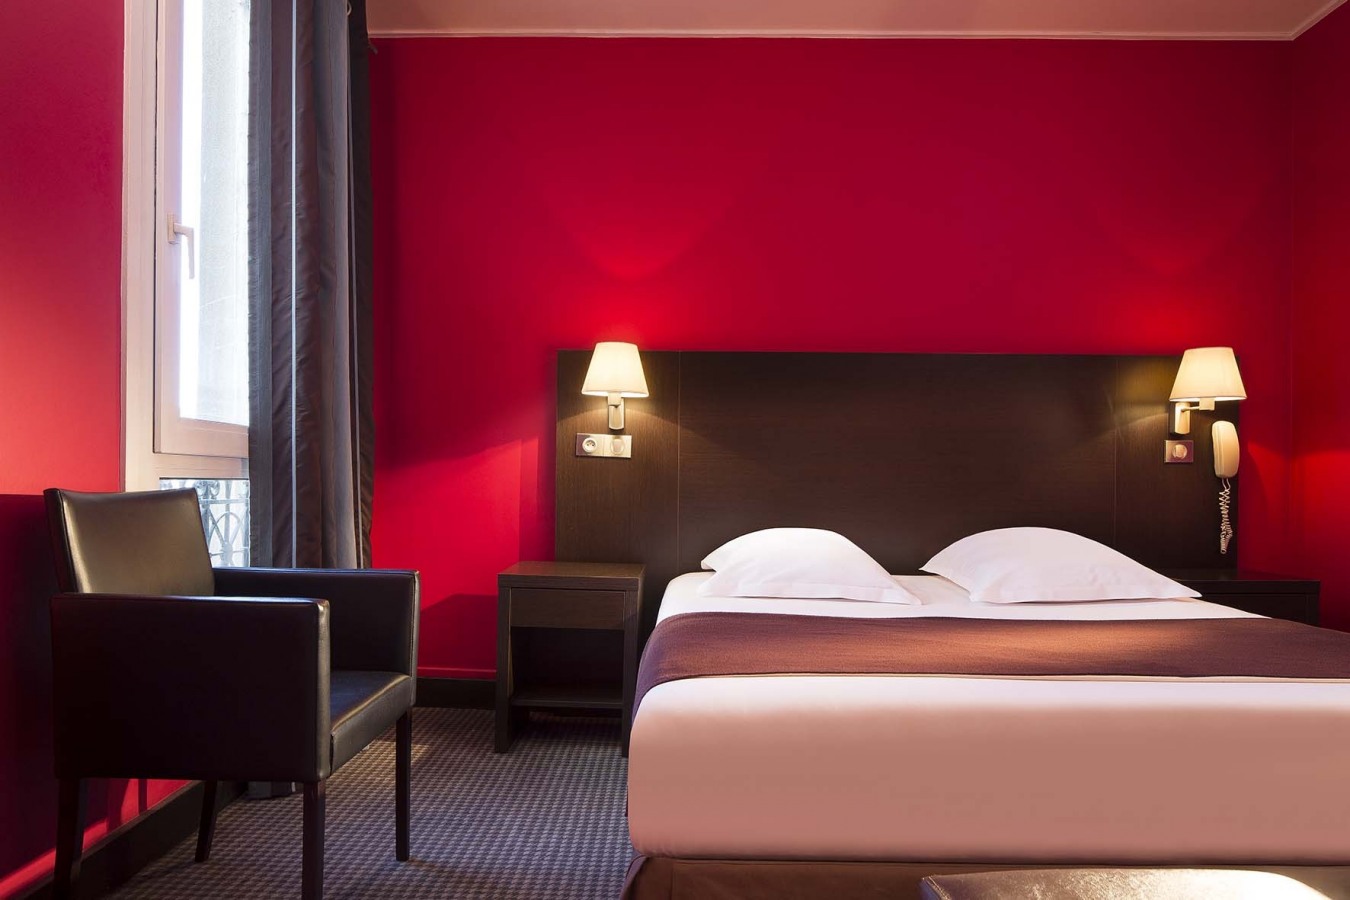 Hotel Sophie Germain - Disclaimer